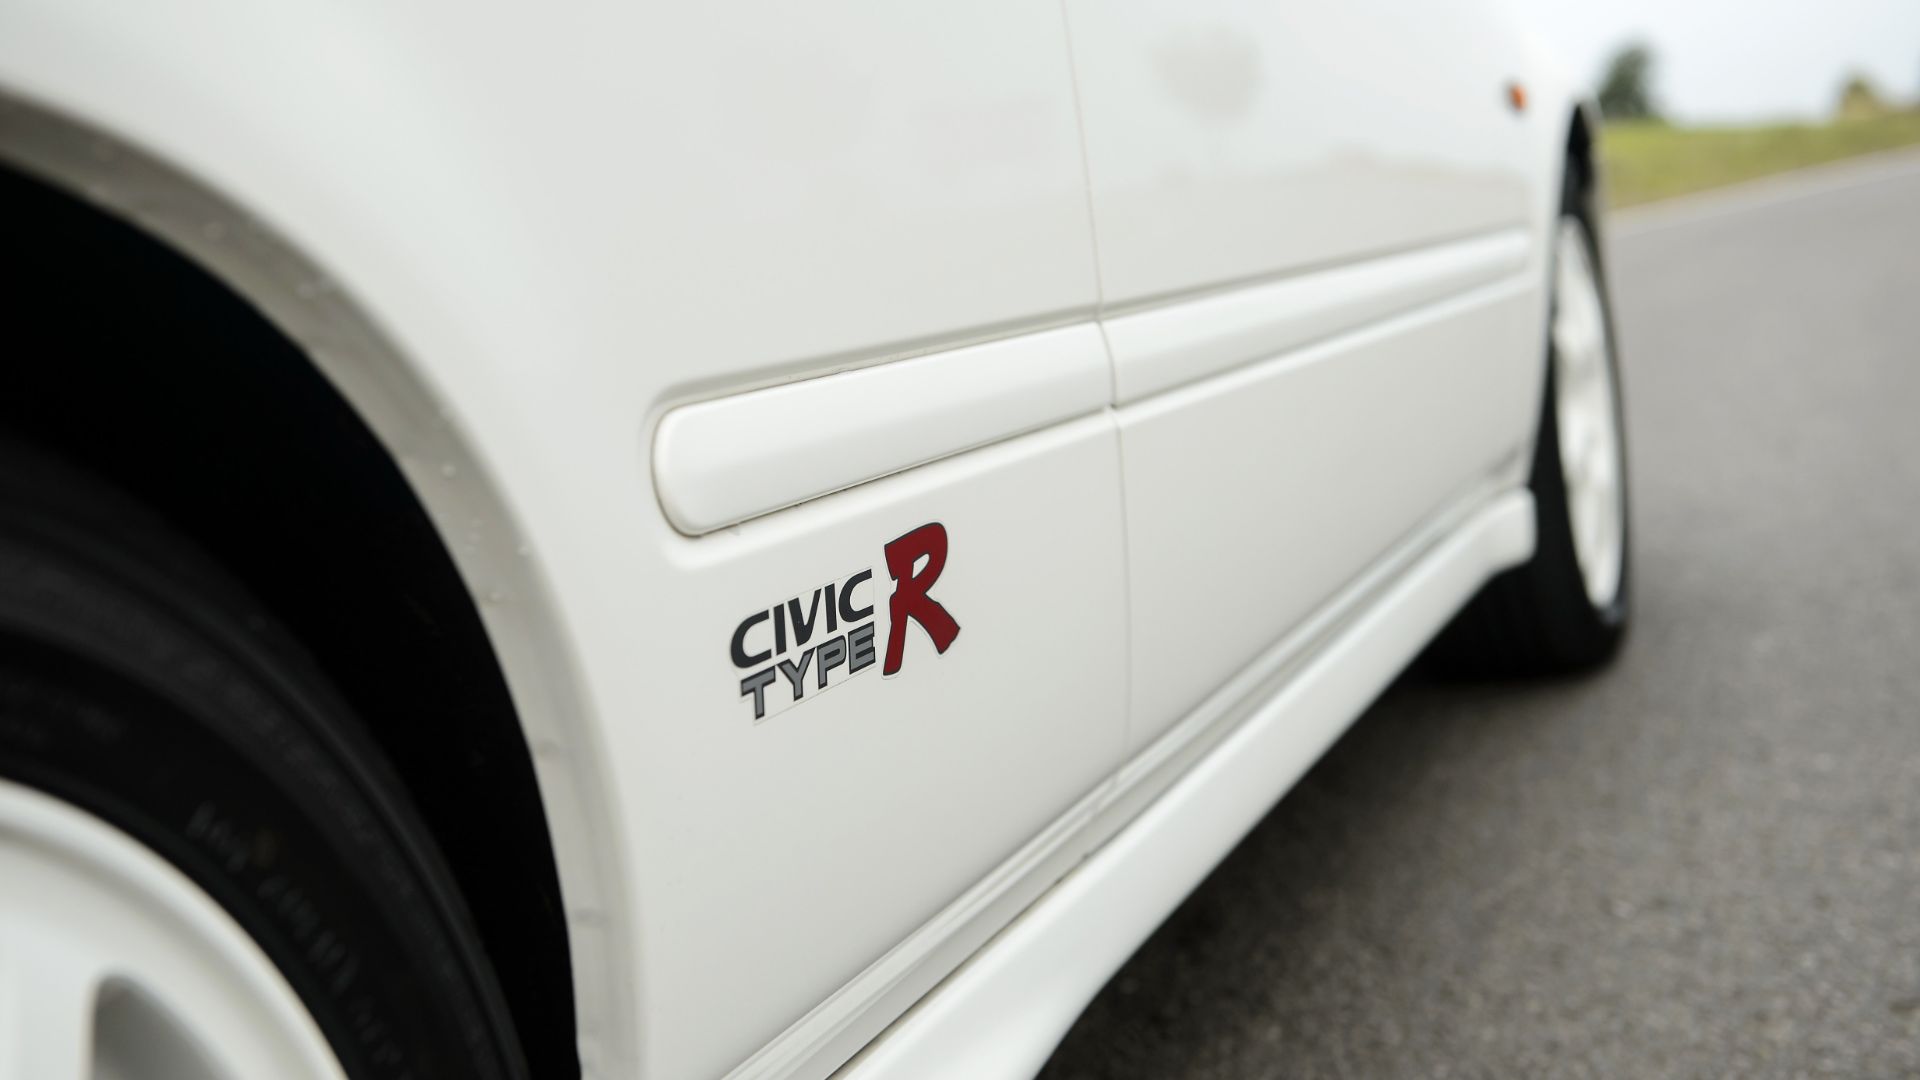 A Civic Type R logo.